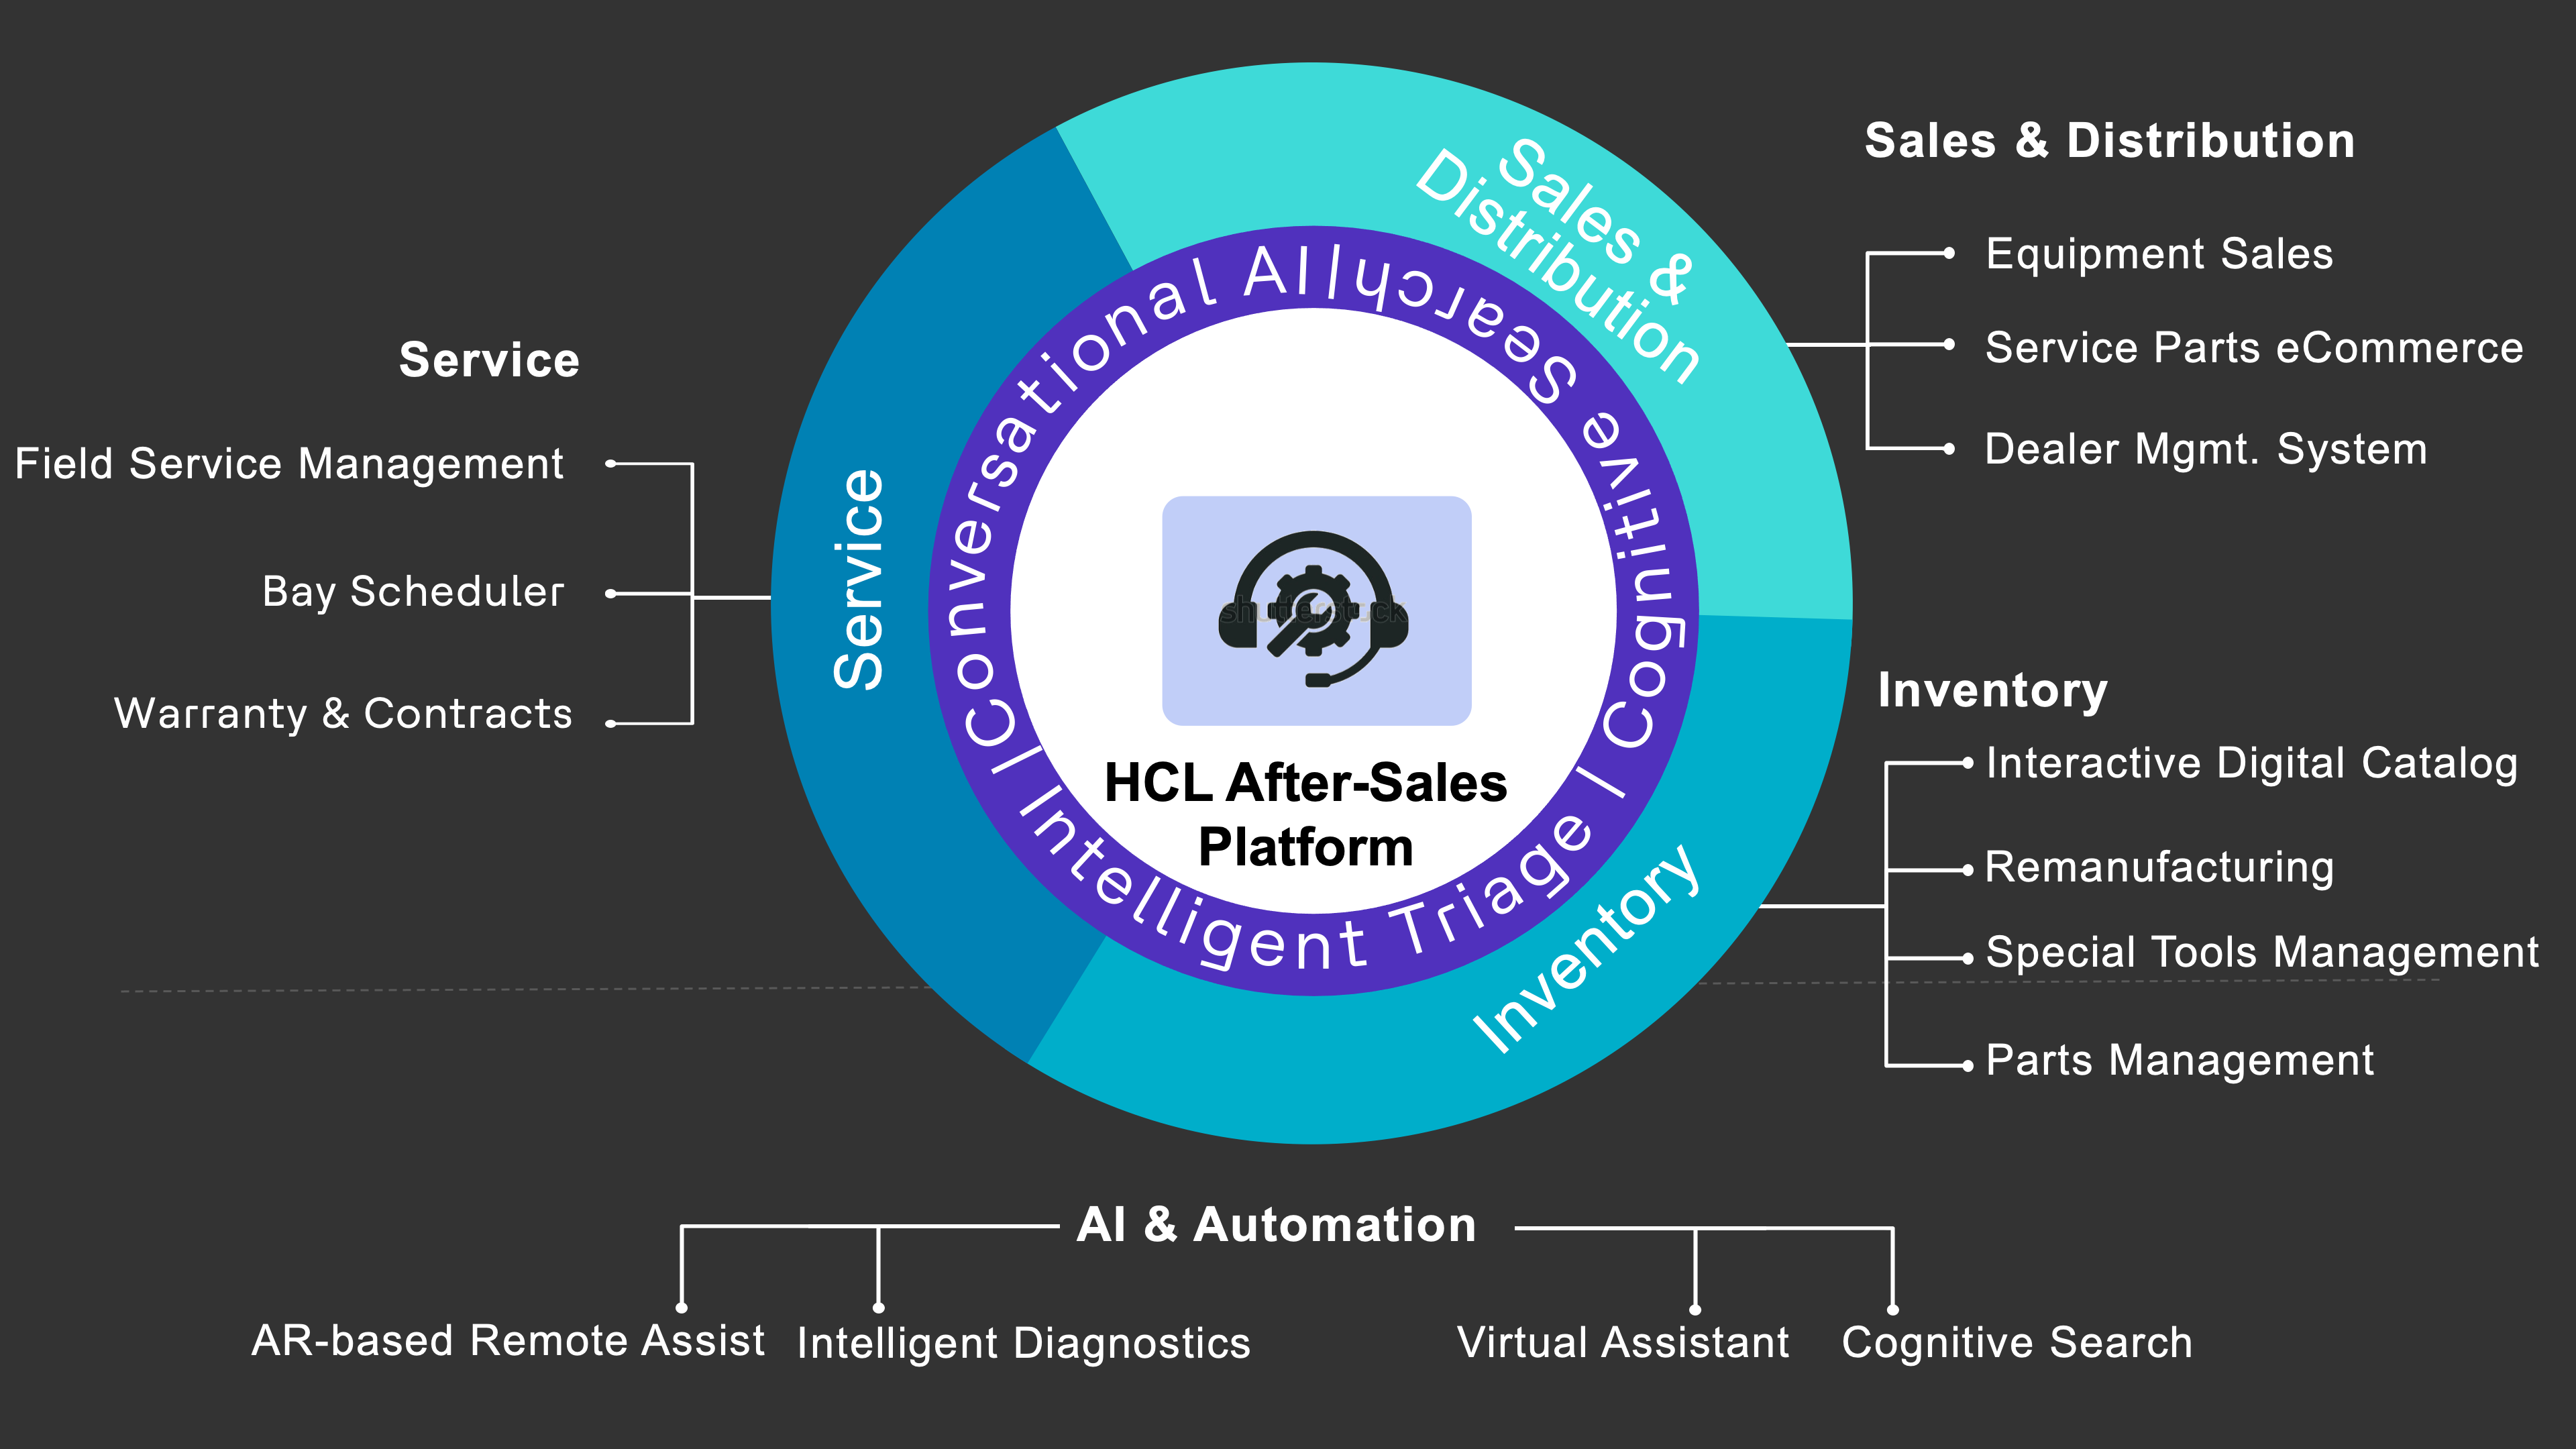 HCL After-Sales Platform